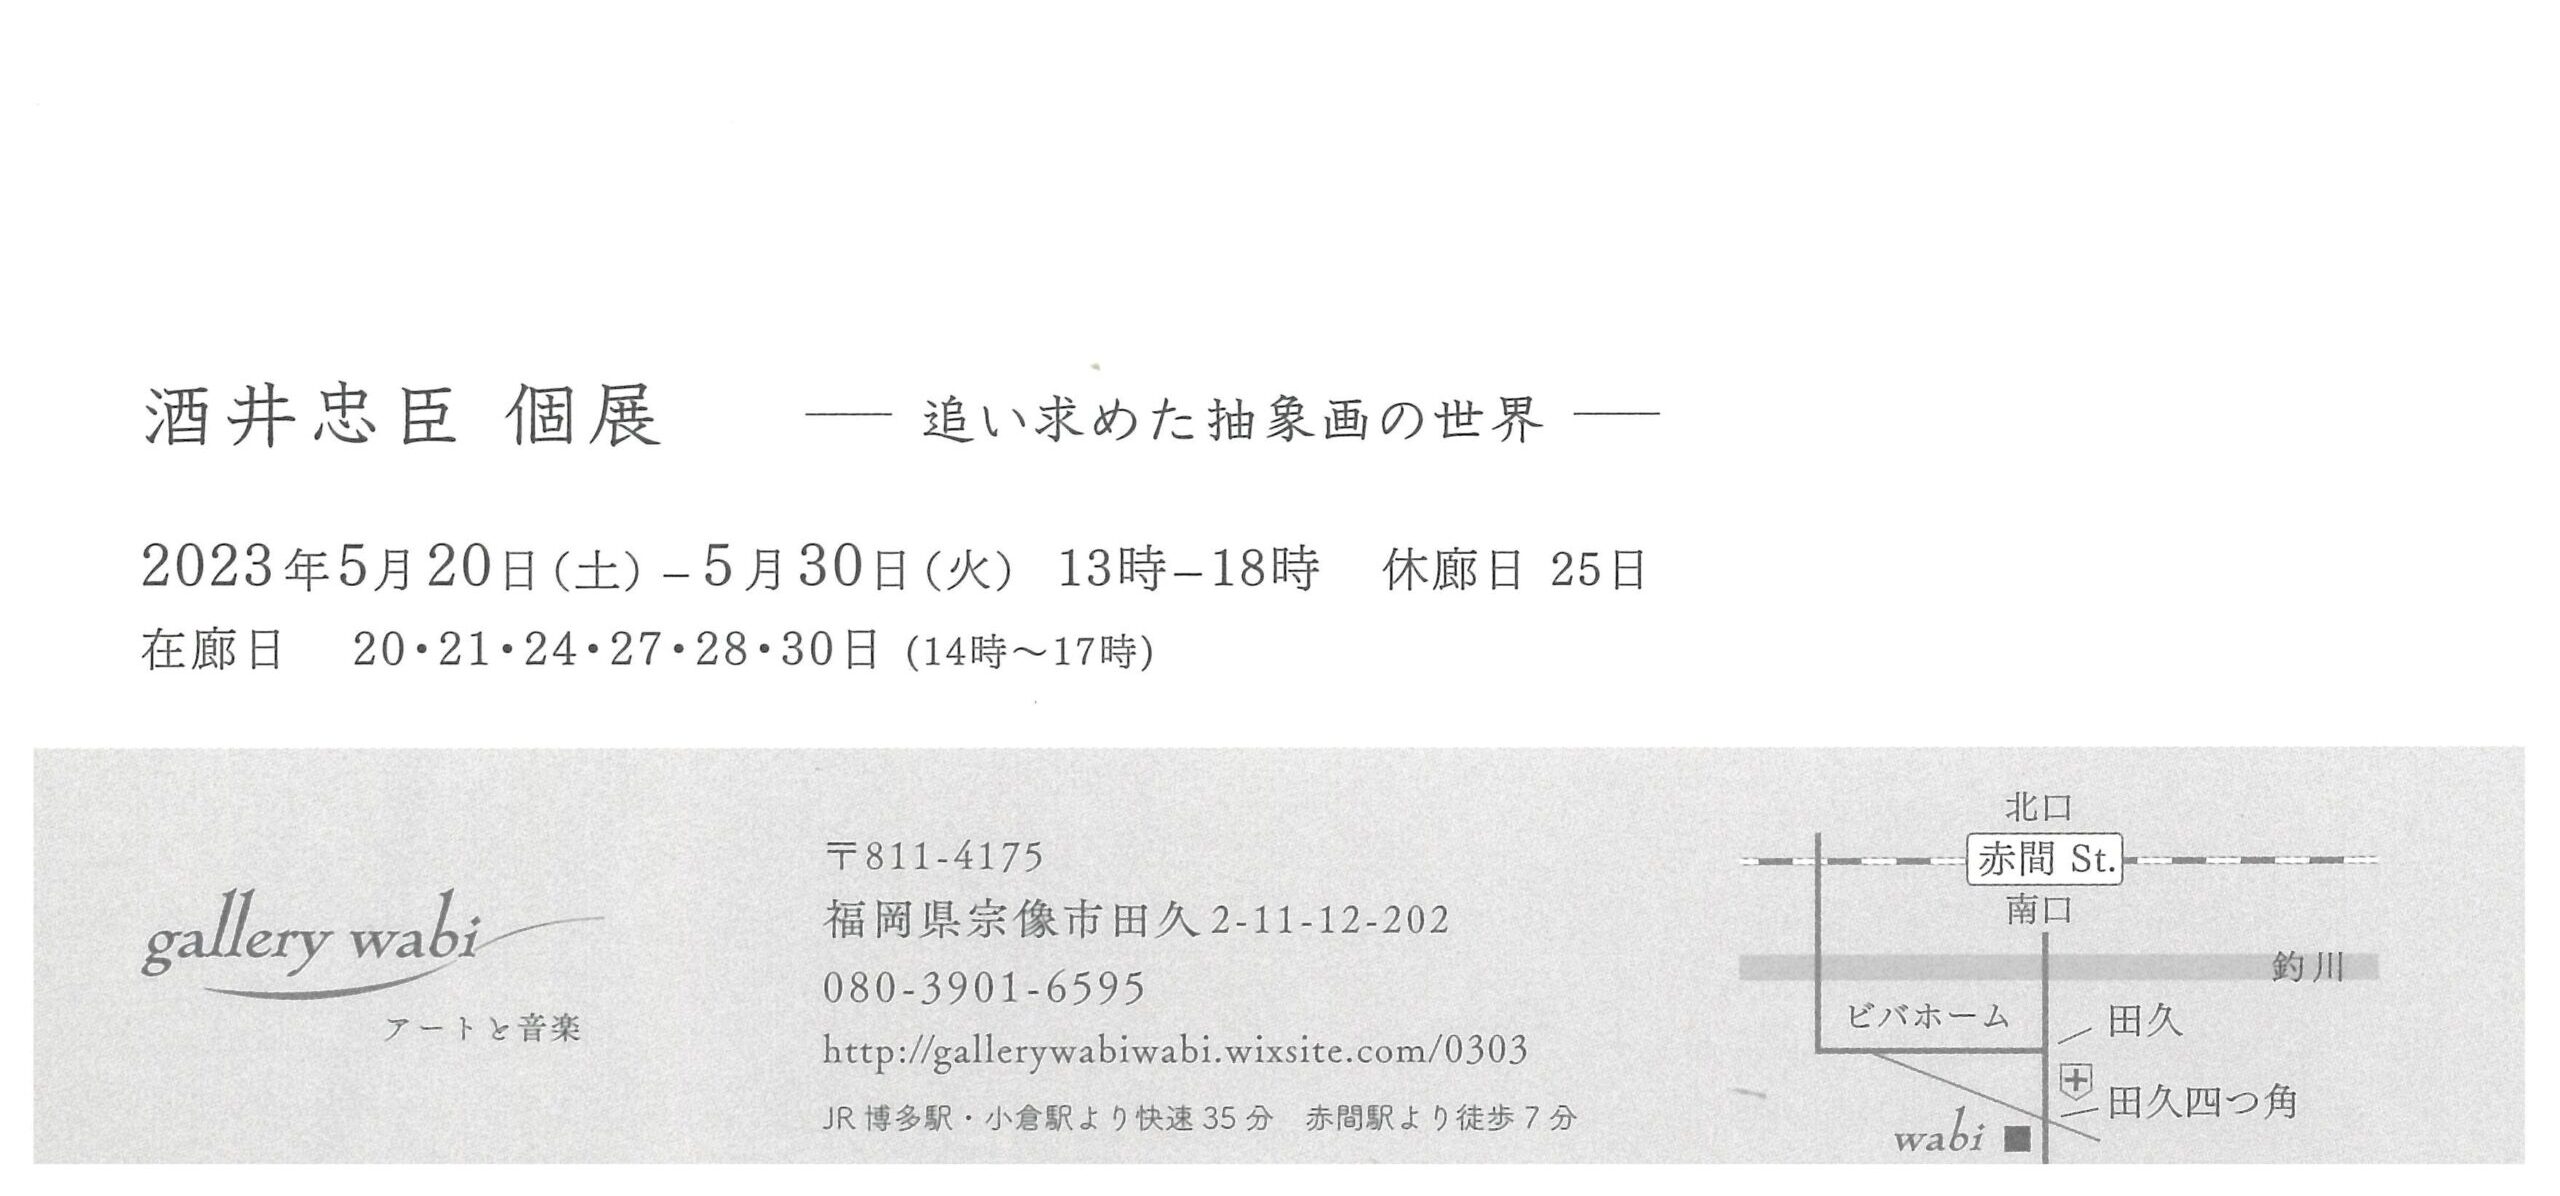 酒井忠臣個展ー追い求めた抽象画の世界ー - 会員による展覧会 - 福岡県美術協会